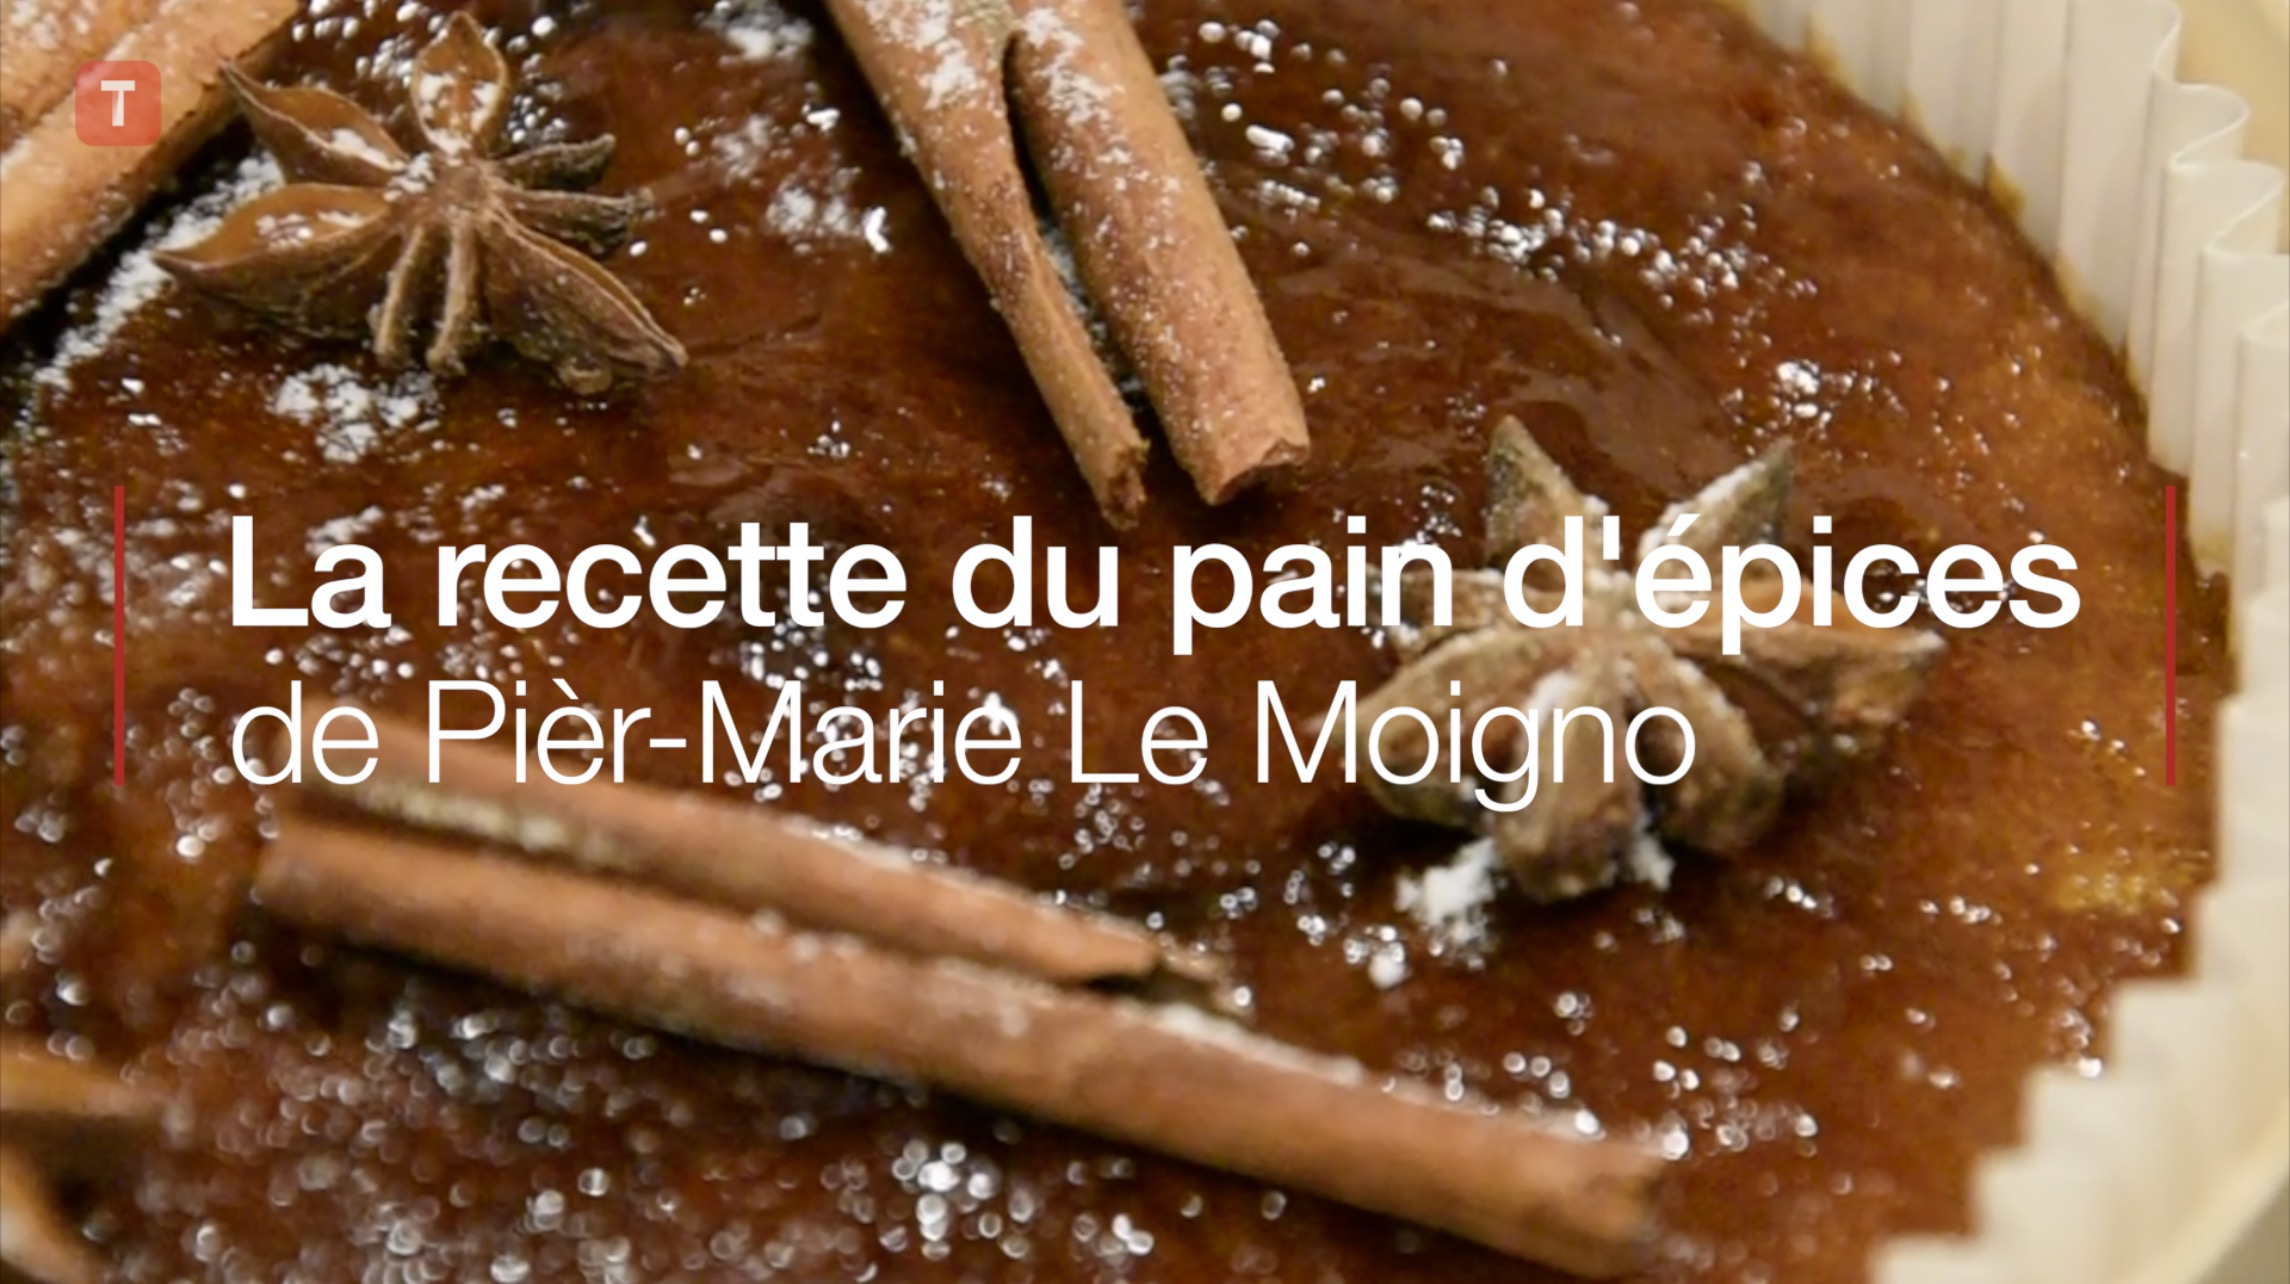 La recette du pain d'épices de Pièr-Marie Le Moigno (Le Télégramme)